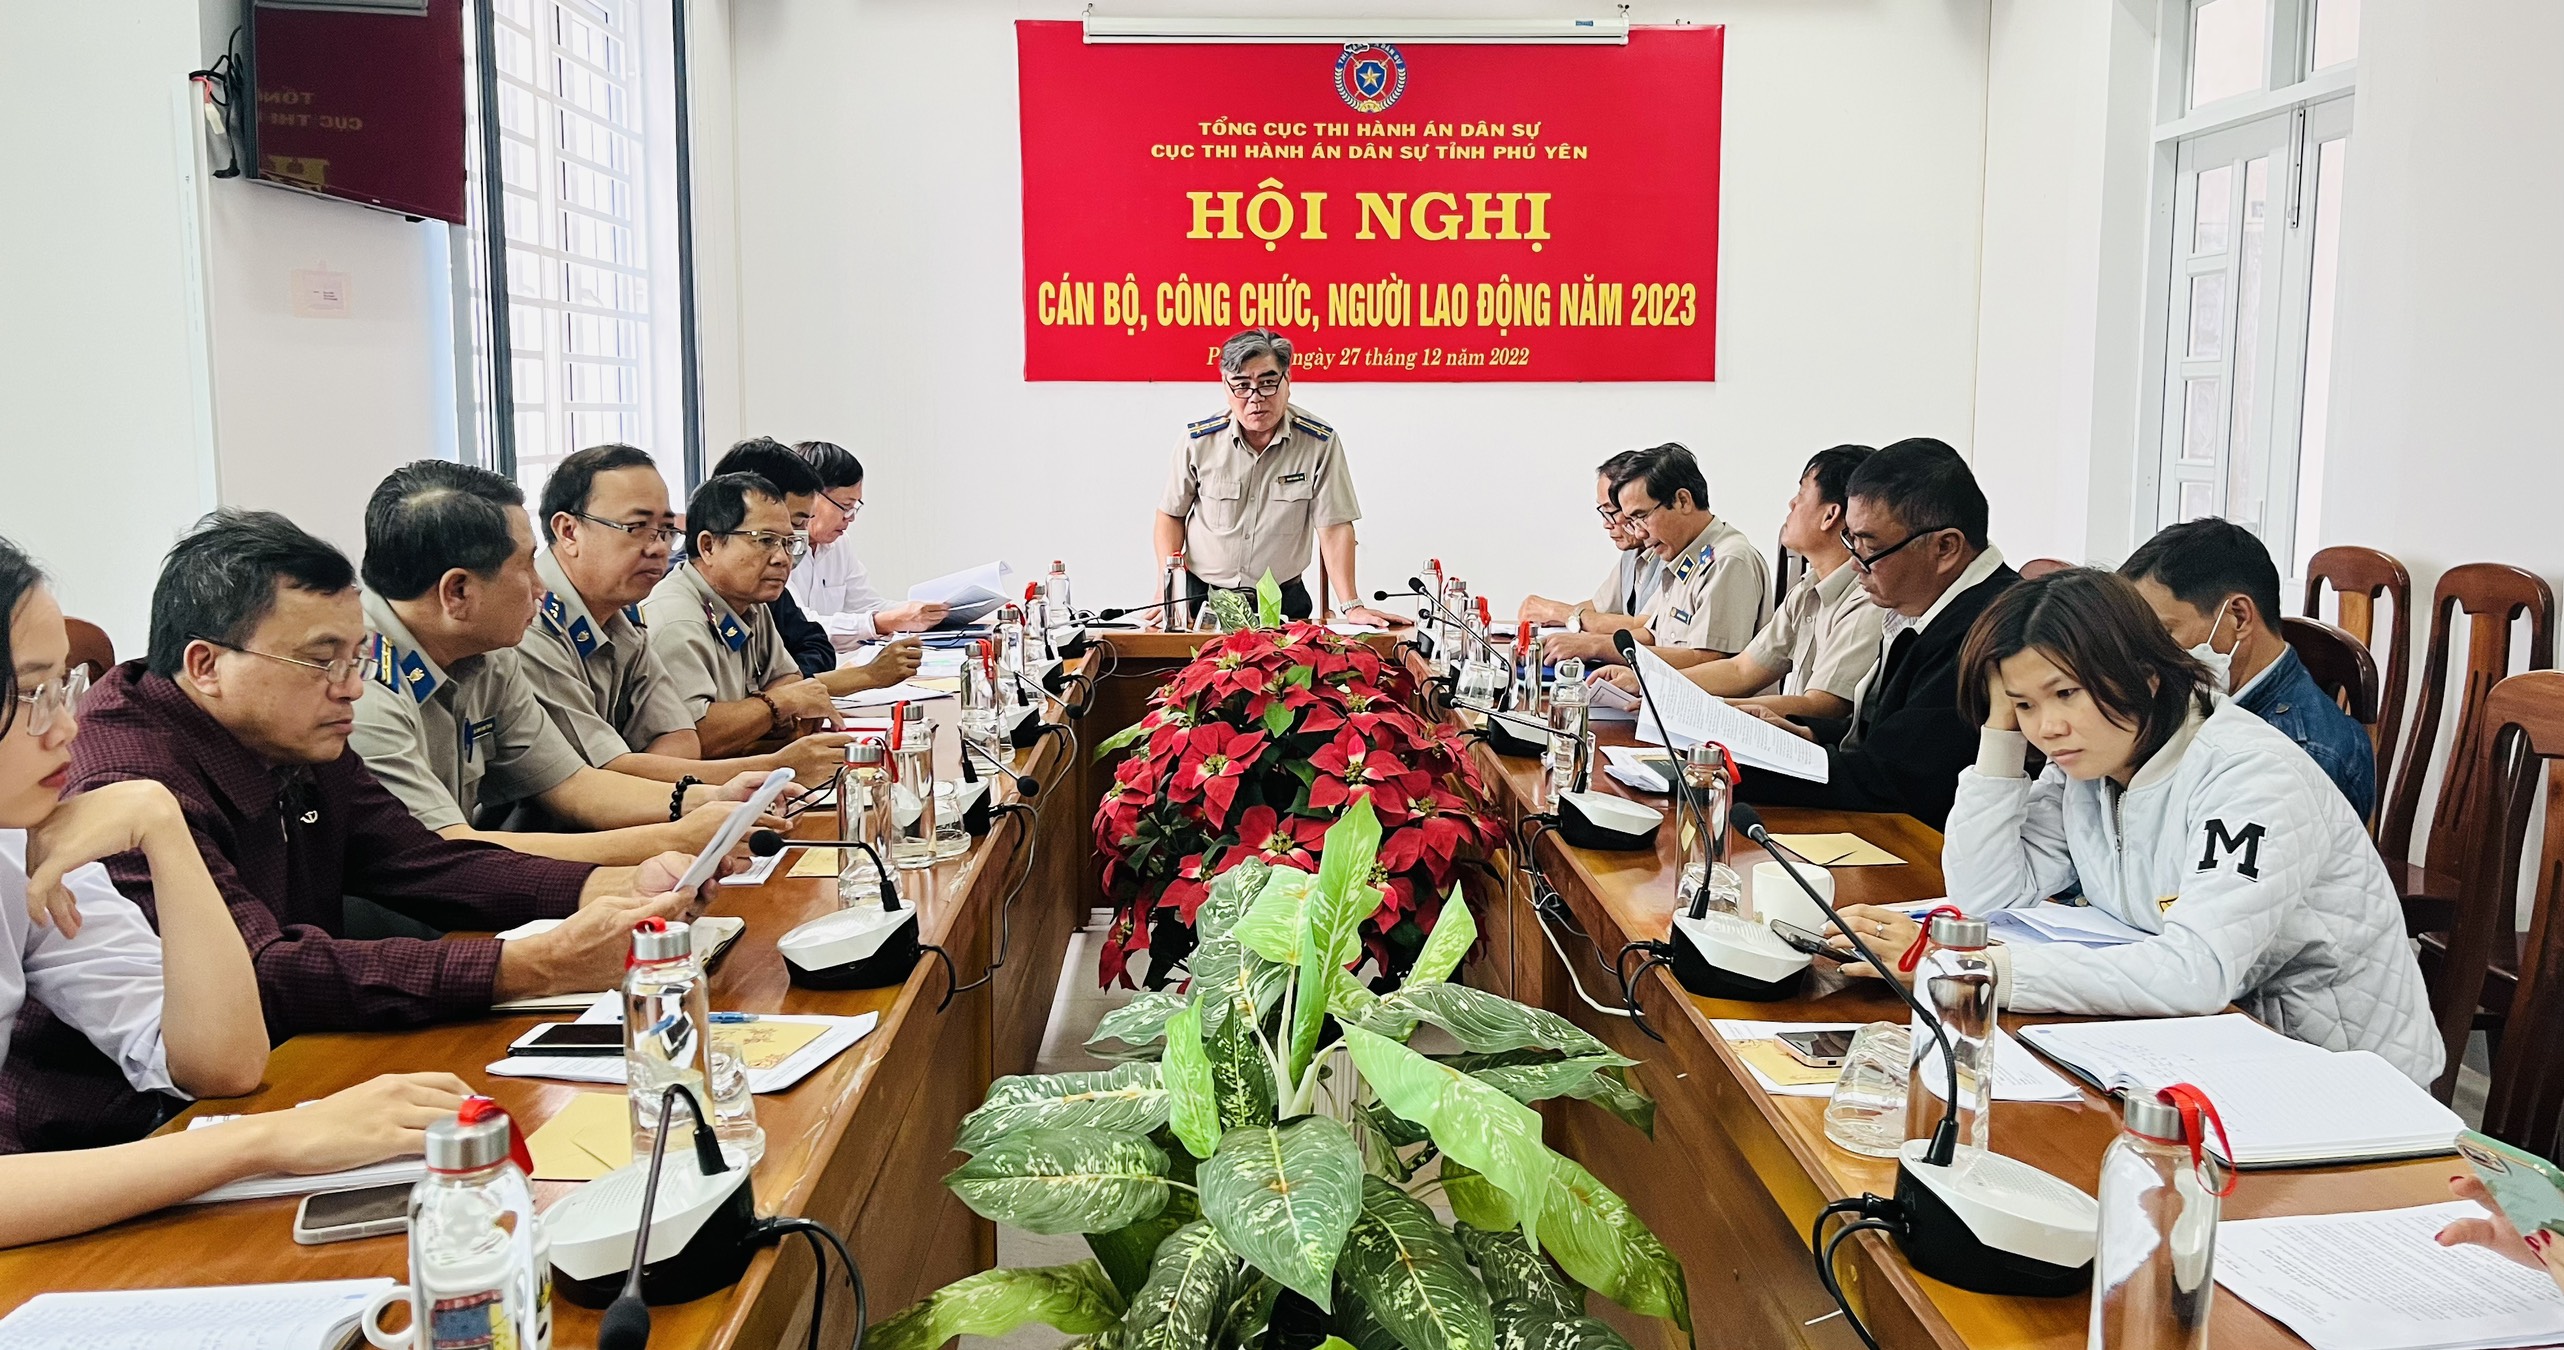 Cục Thi hành án dân sự tỉnh Phú Yên: Tổ chức Hội nghị cán bộ, công chức, người lao động năm 2023